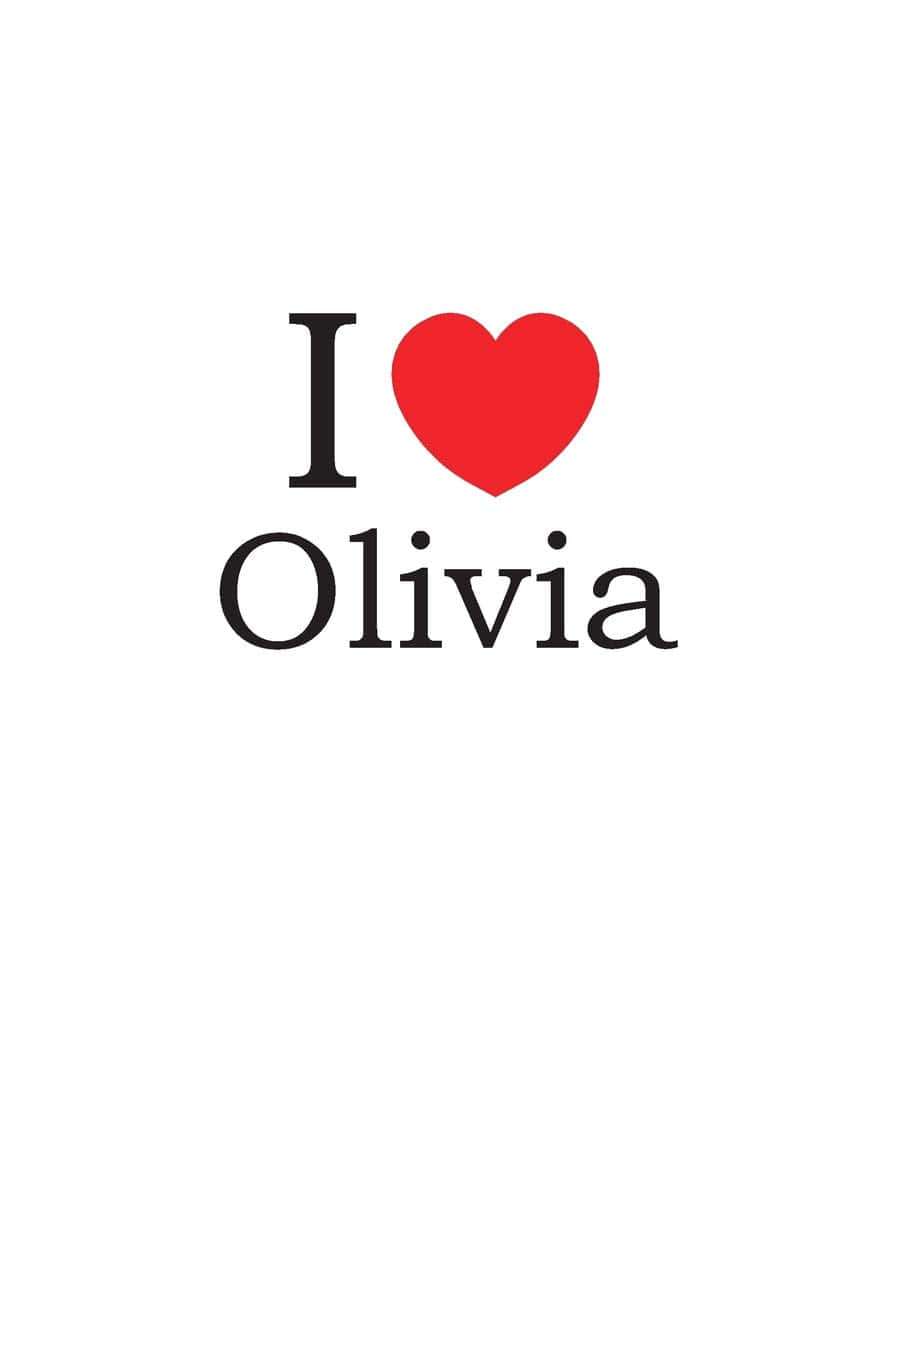 I Love PFP Olivia Wallpaper